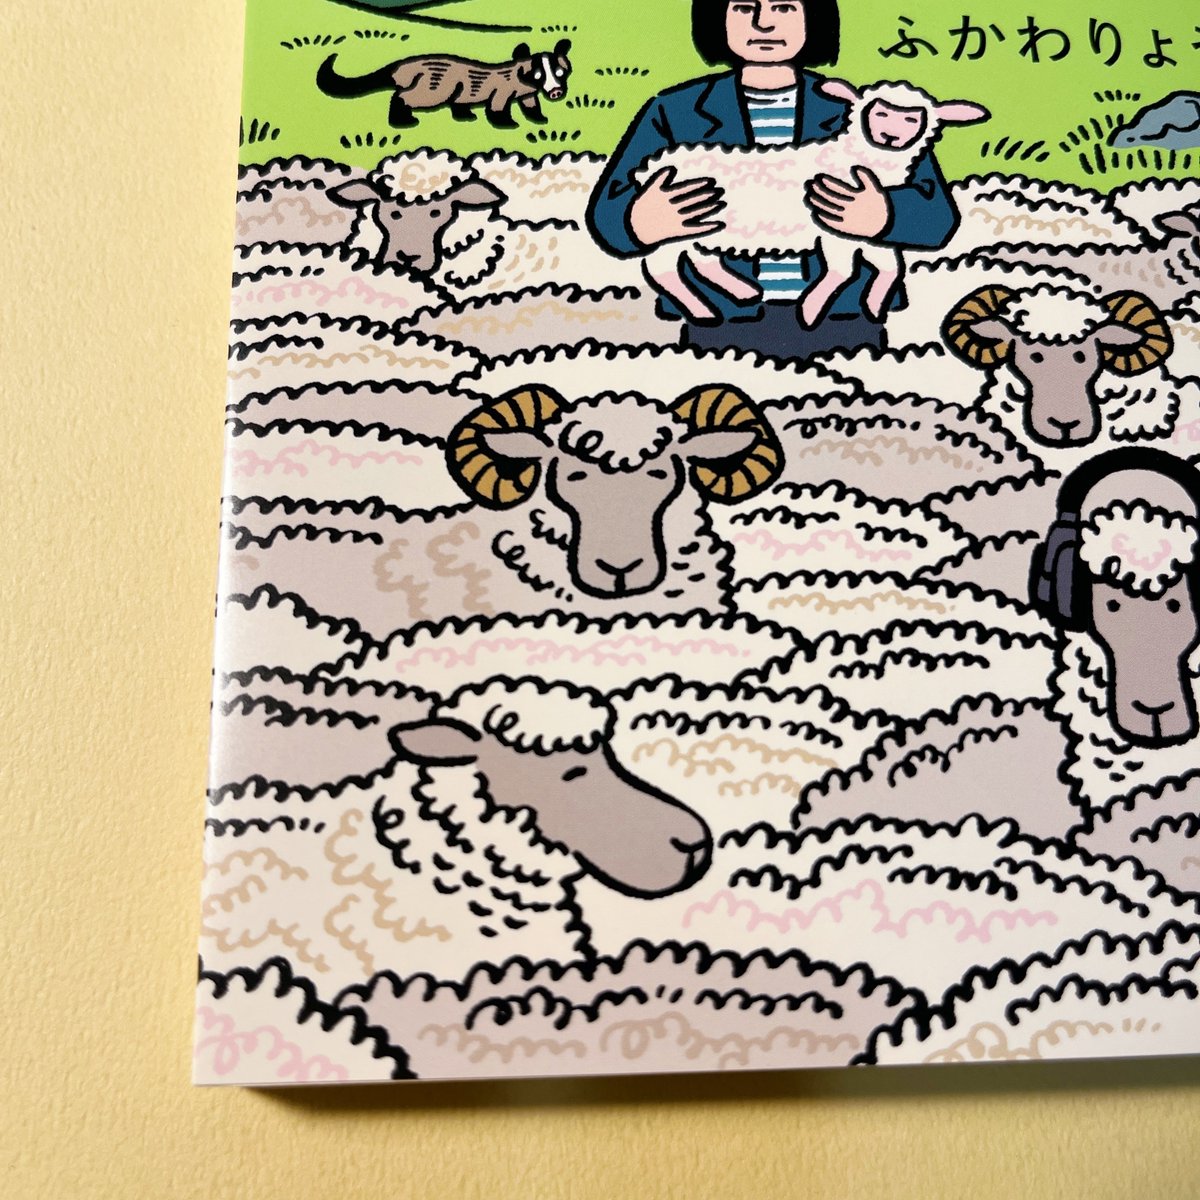 ふかわりょうさんのエッセイ集「世の中と足並みがそろわない」(新潮文庫)の装画を担当しました。アイスランドの羊たちの中に佇むふかわさんのイメージです。拝読し、改めてエッセイとは共感の文学だなあと思いました。